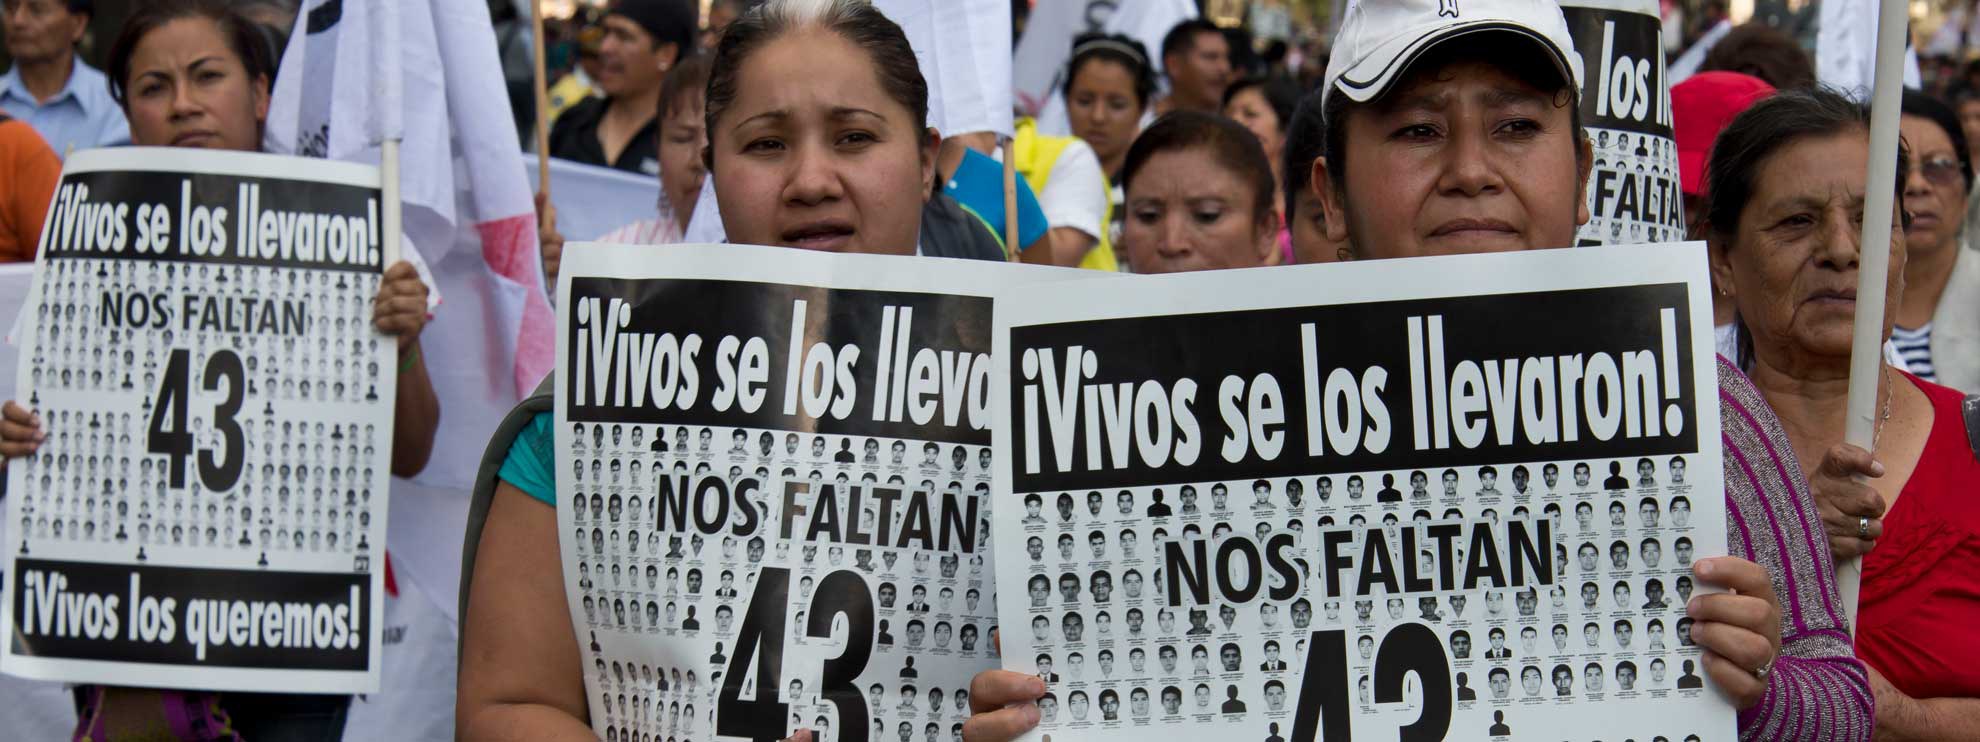 Des parents des 43 élèves disparus d'Ayotzinapa participent à une marche commémorant leur disparition. © Amnesty International